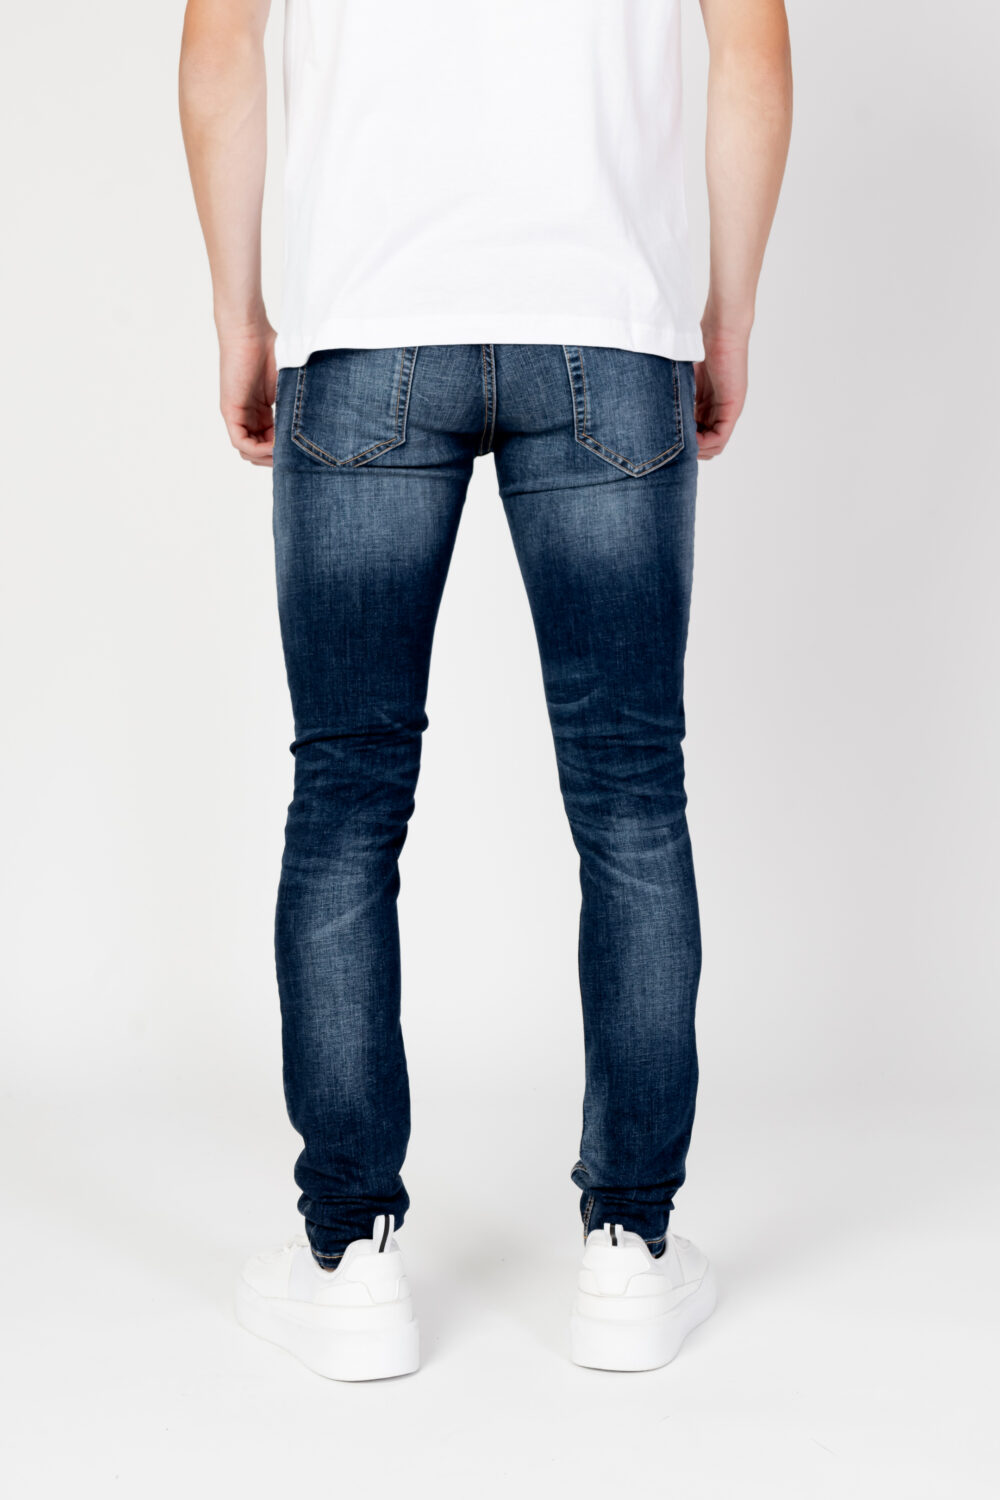 Jeans skinny Antony Morato gilmour super Denim - Foto 3